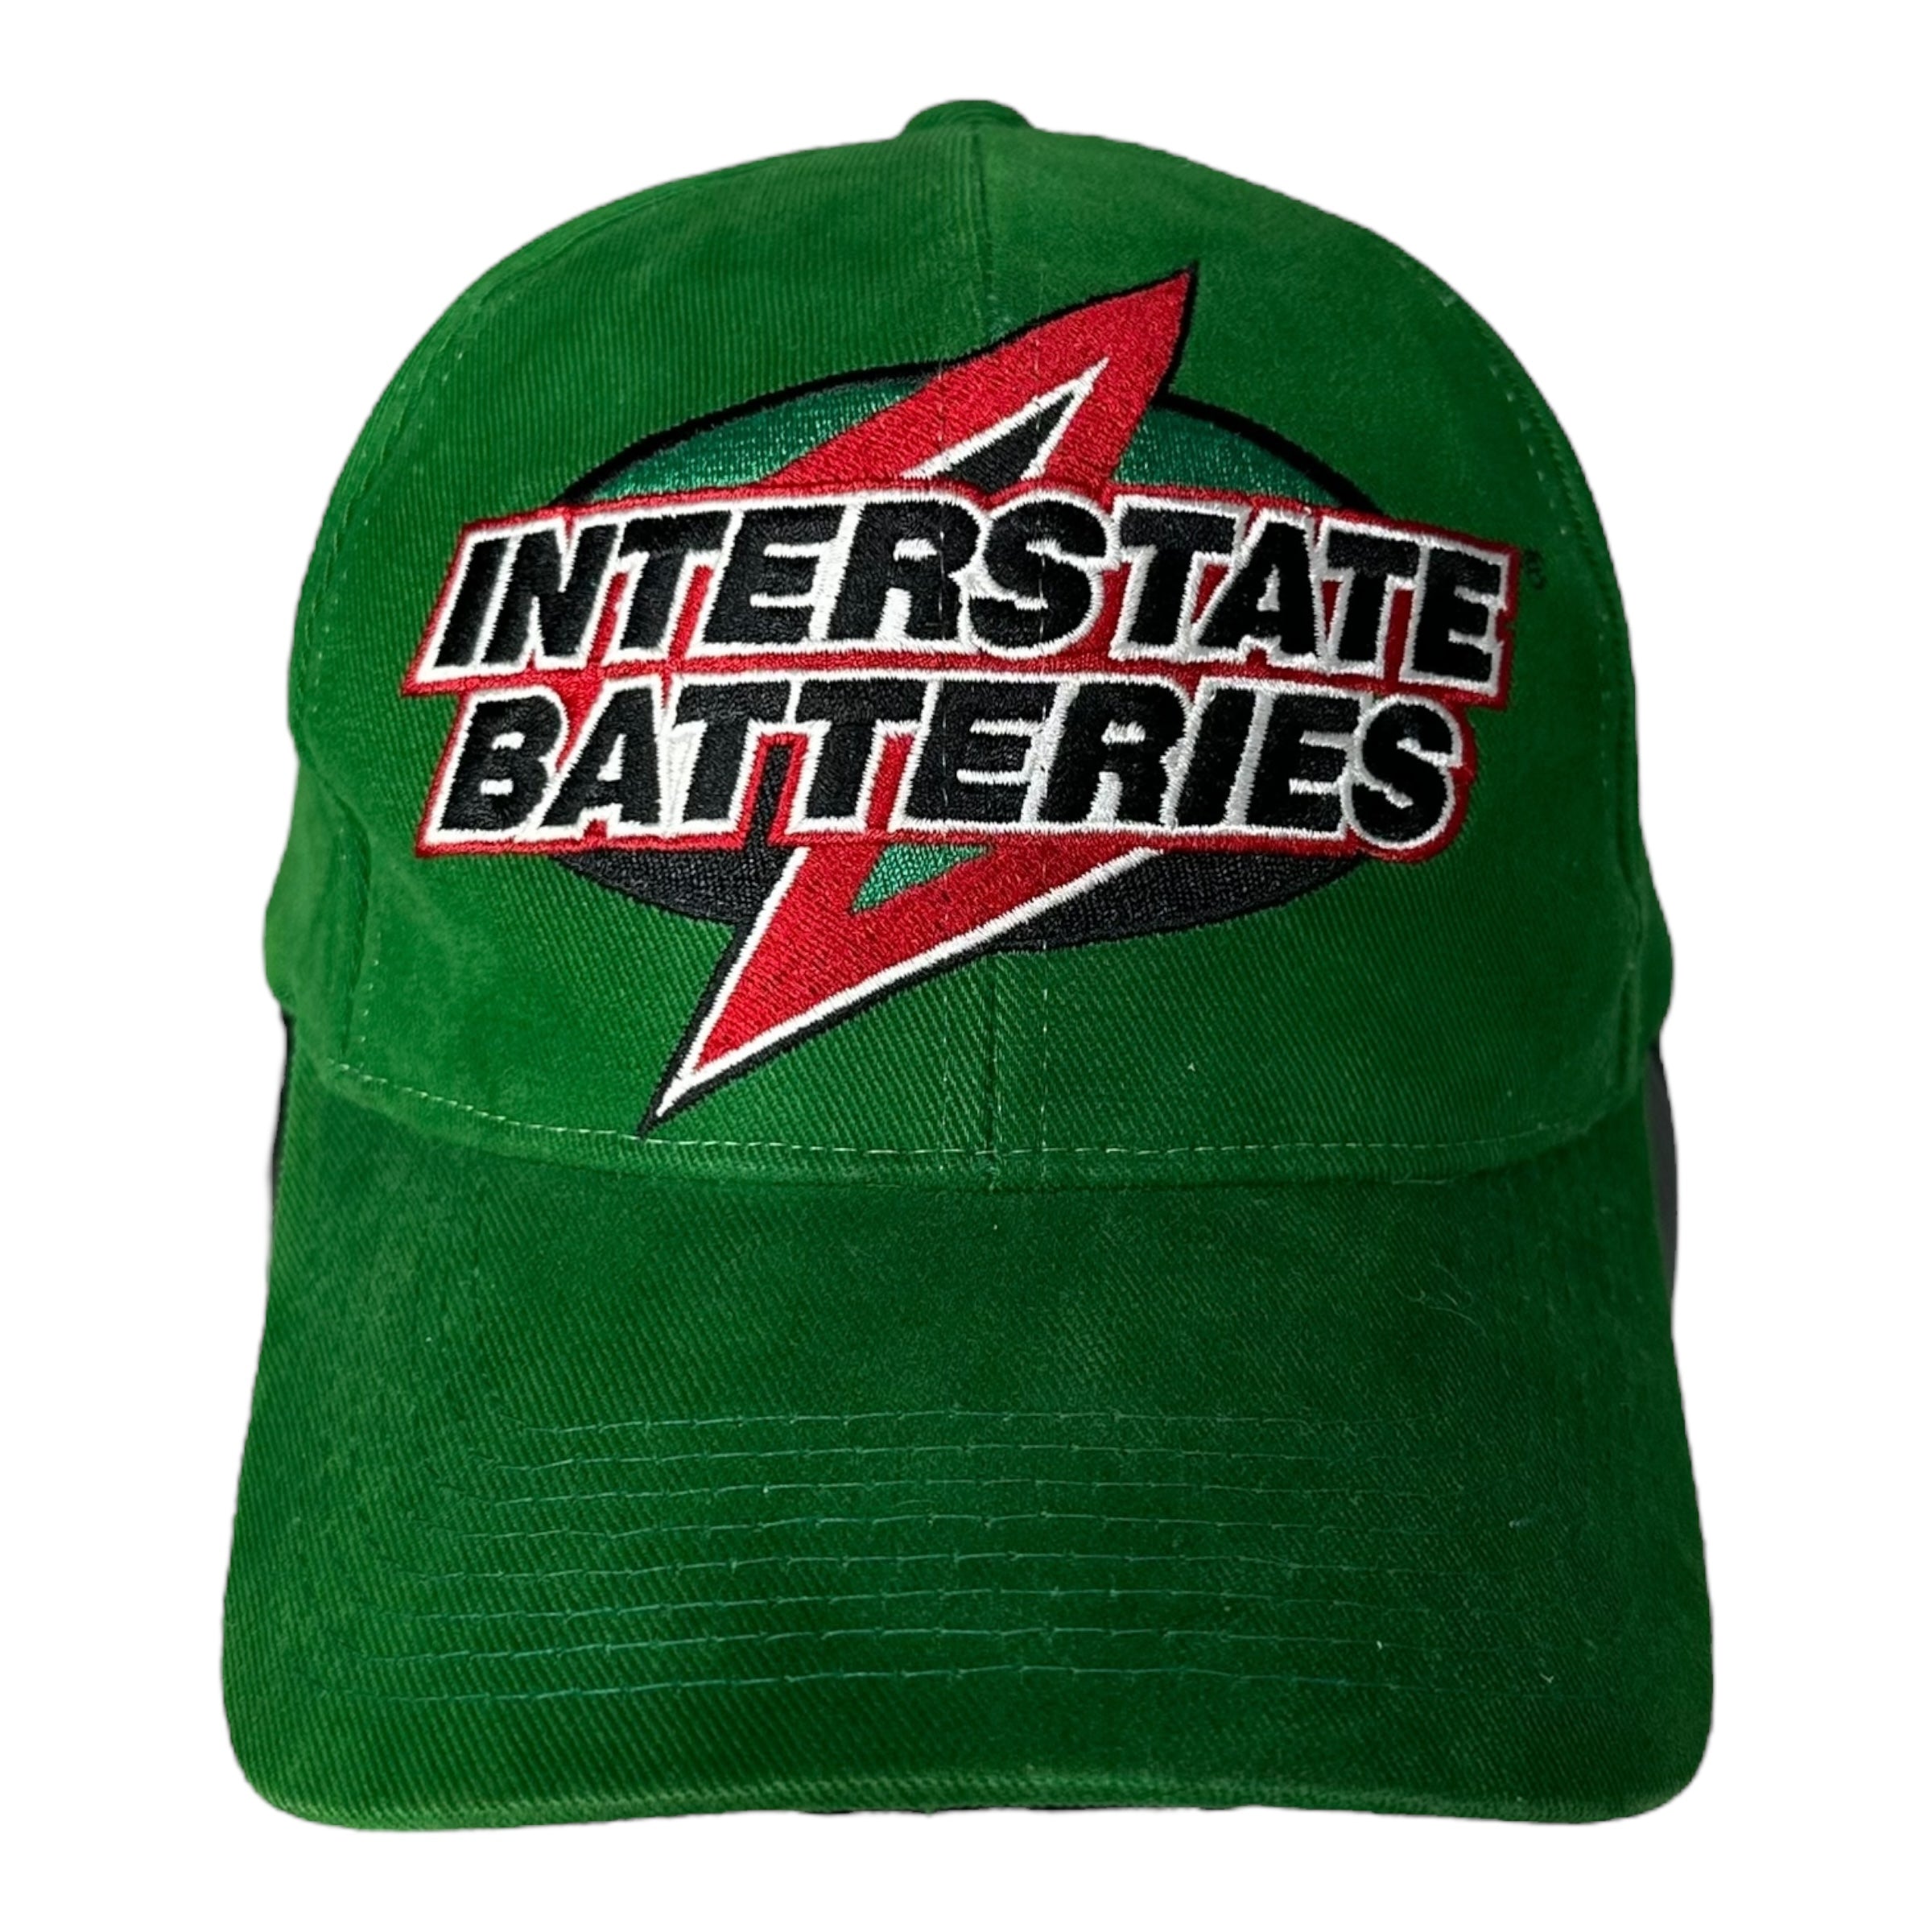 Vintage Interstate NASCAR Snapback Hat